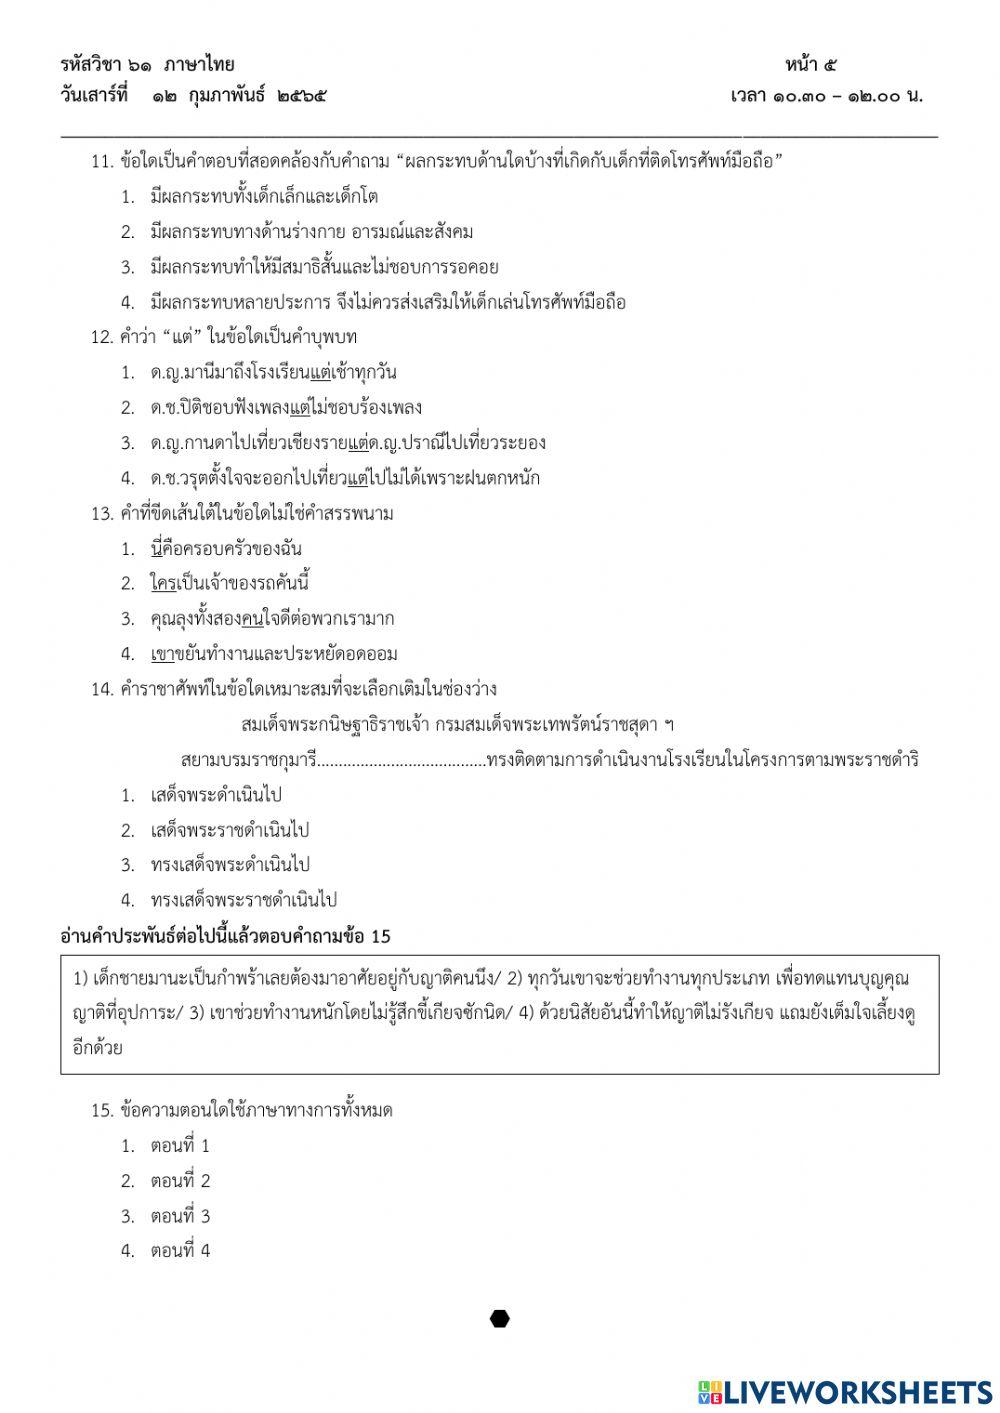 แบบทดสอบ Pre O-NET วิชาภาษาไทย ป.6 ปีการศึกษา 2564